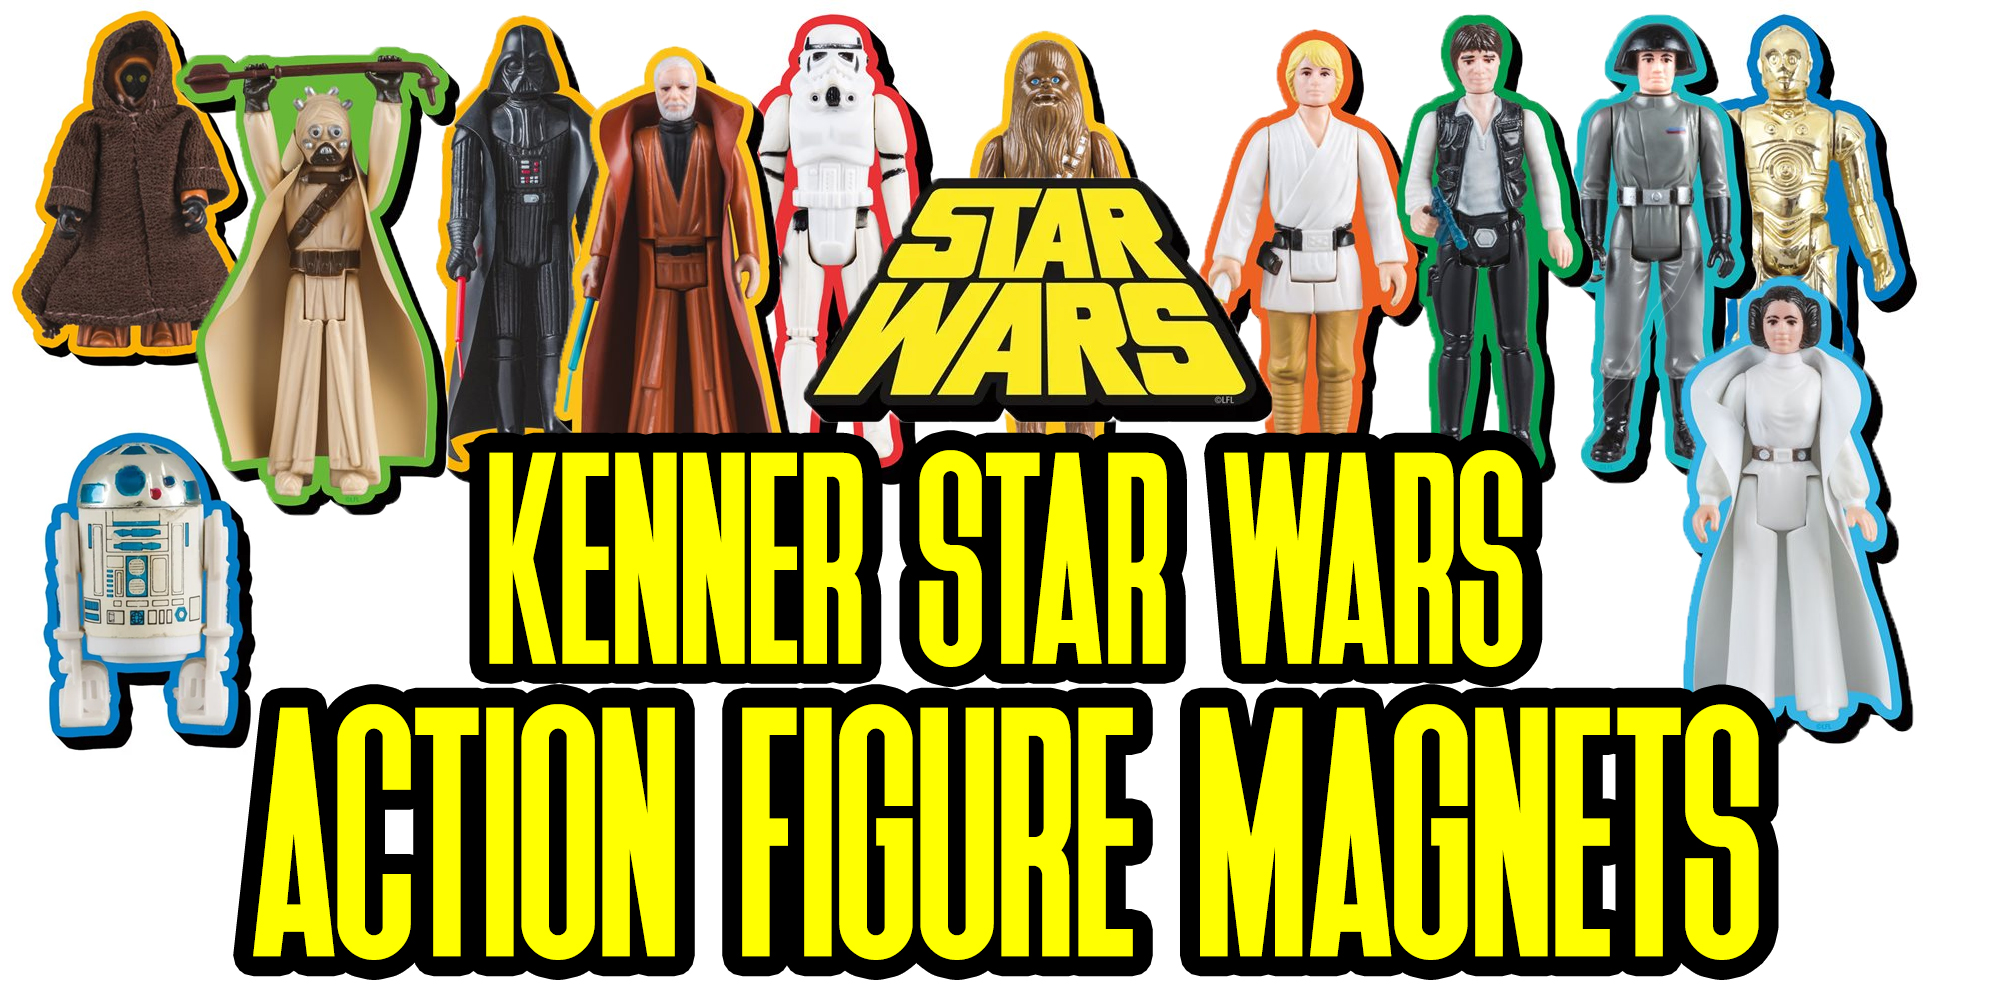 Kenner Star Wars Action Figure Magnets